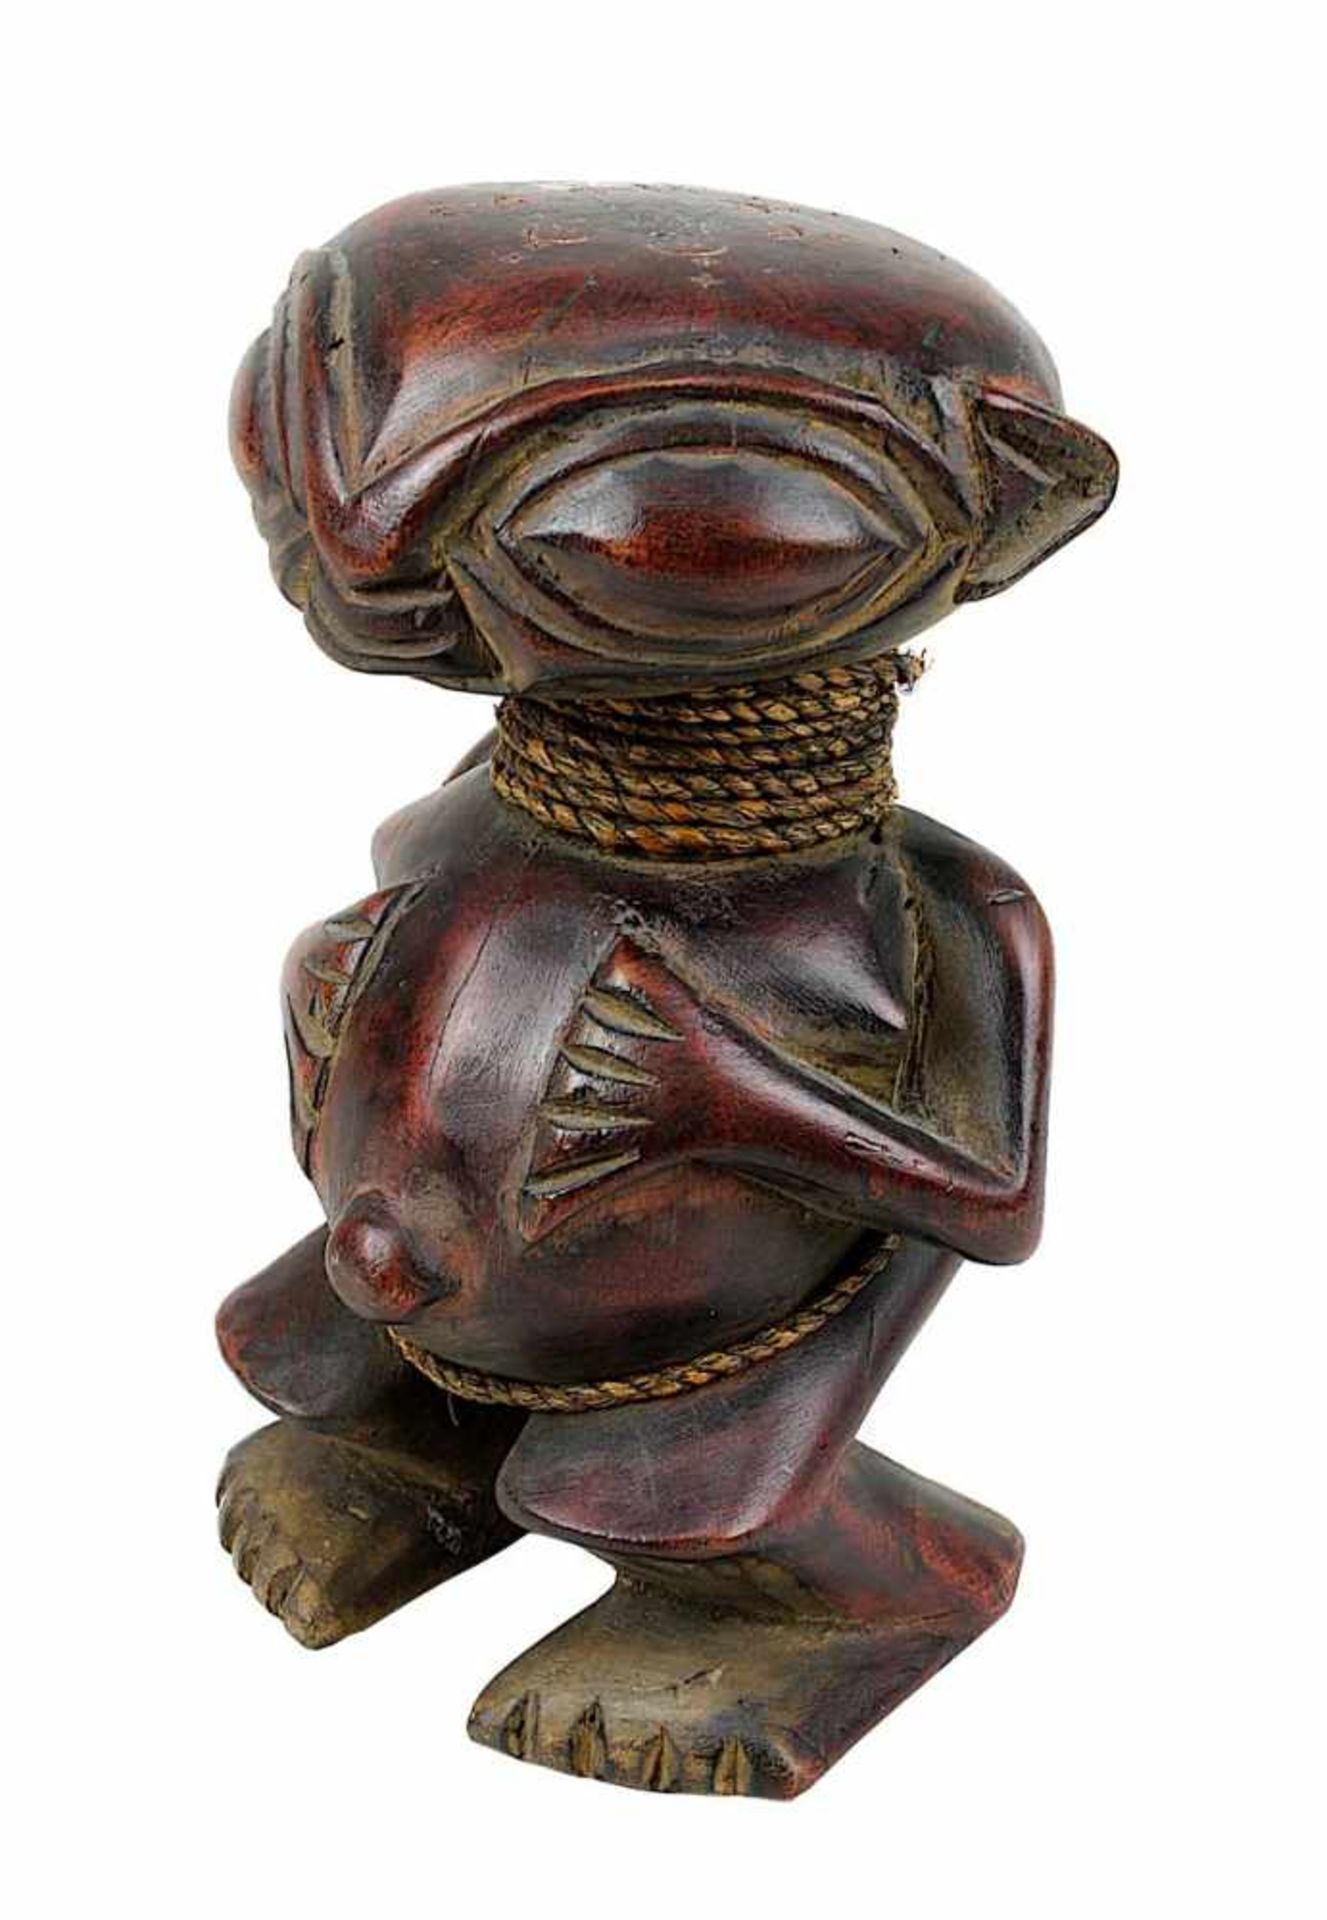 Figur der Pygmäen, Tikar, Kamerun, weibliche Figur aus dunkel gebeiztem hartem Holz, großer